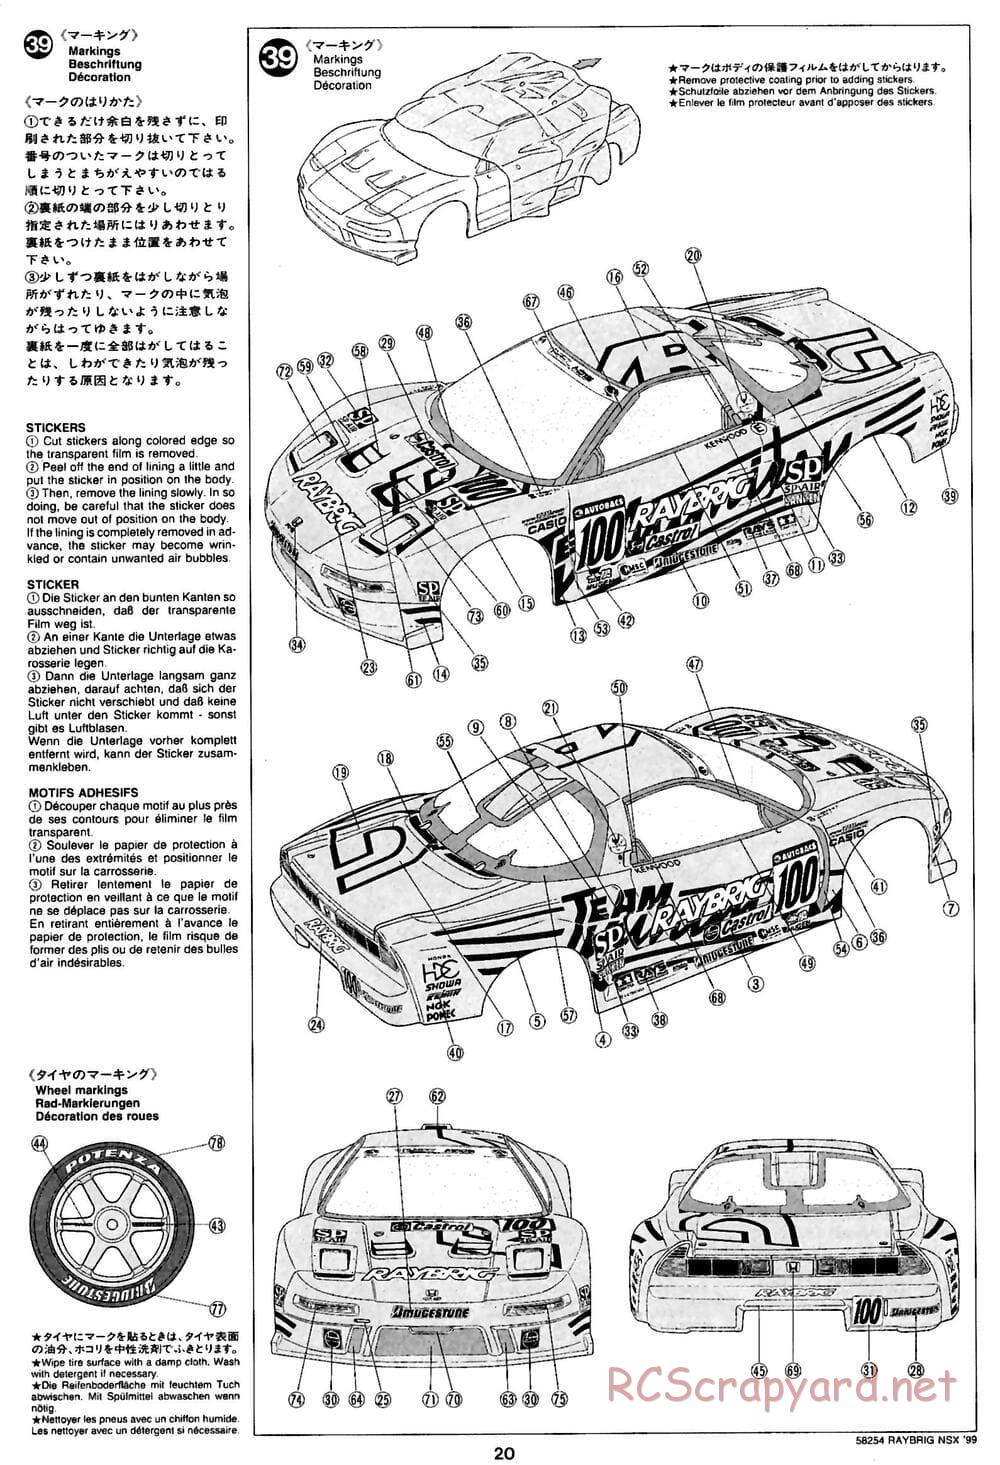 Tamiya - Raybrig NSX 99 - TA-03R Chassis - Manual - Page 20